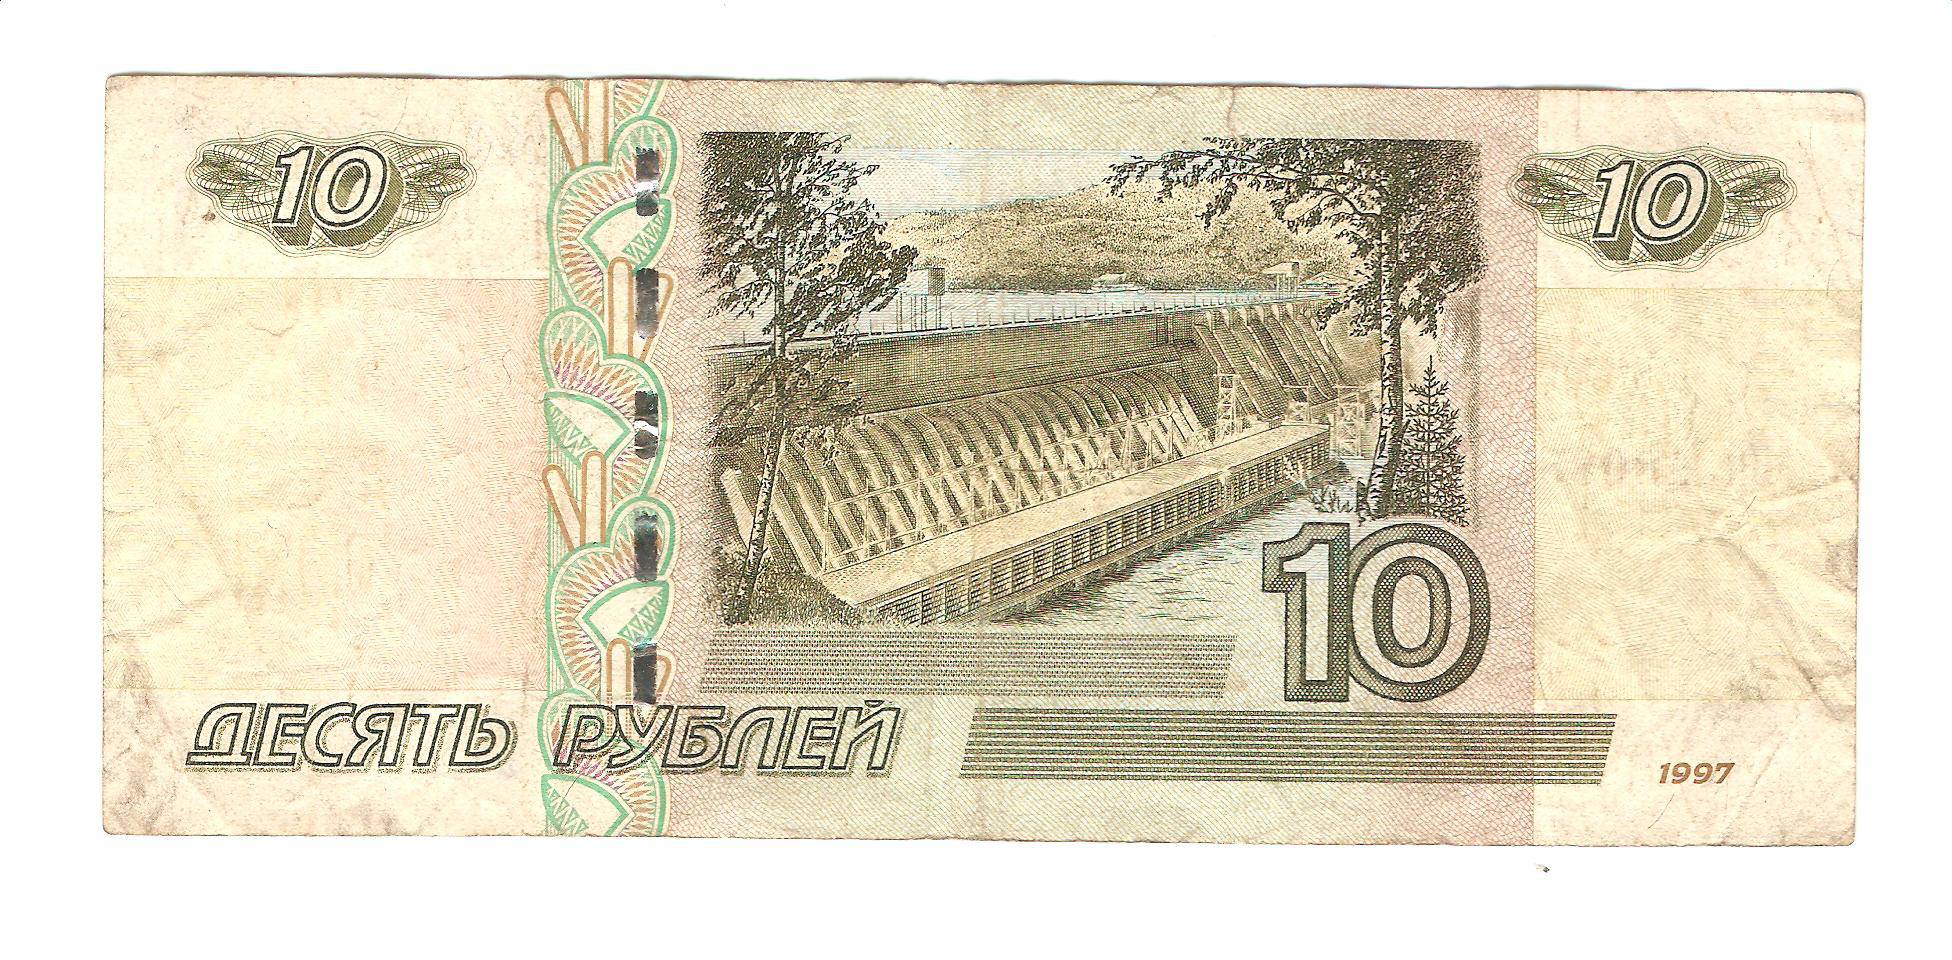 10 23 в рублях. Изображение десятирублевой купюры. 10 Рублевая купюра. Изображение 10 рублевой купюры. Банкнота 10 рублей 1997.